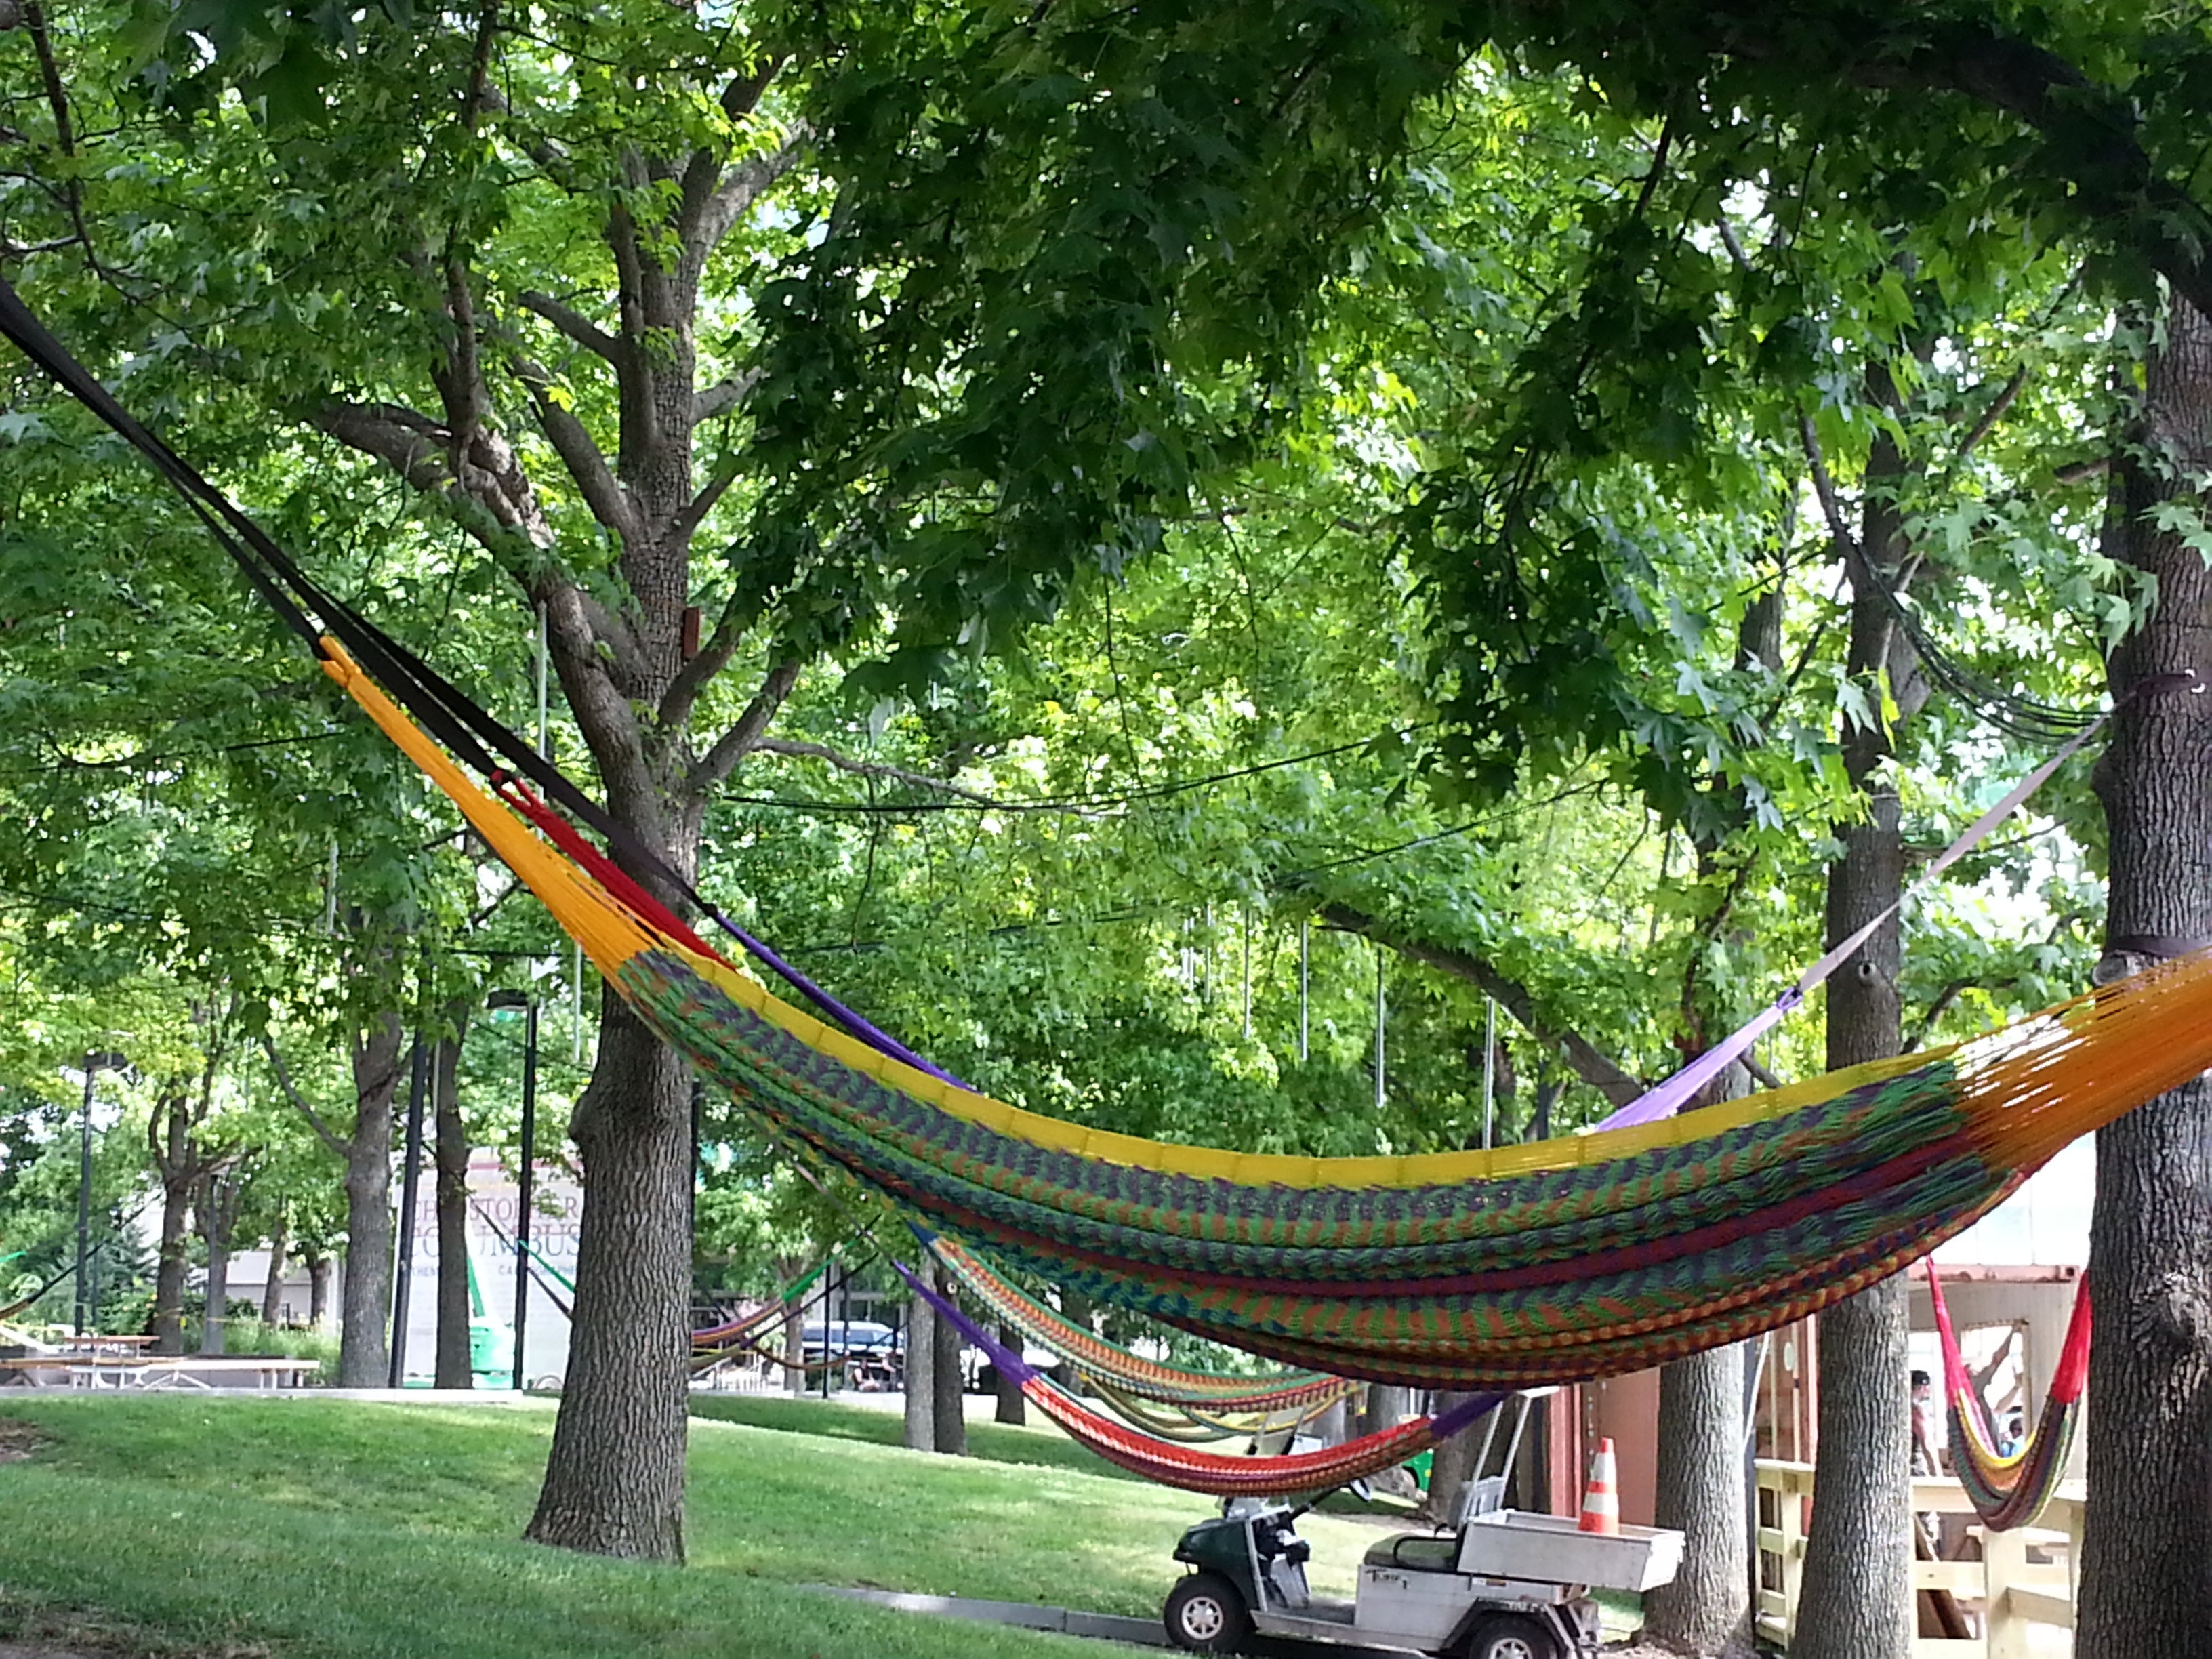 Handmade hammock at Spruce Street Harbor Park